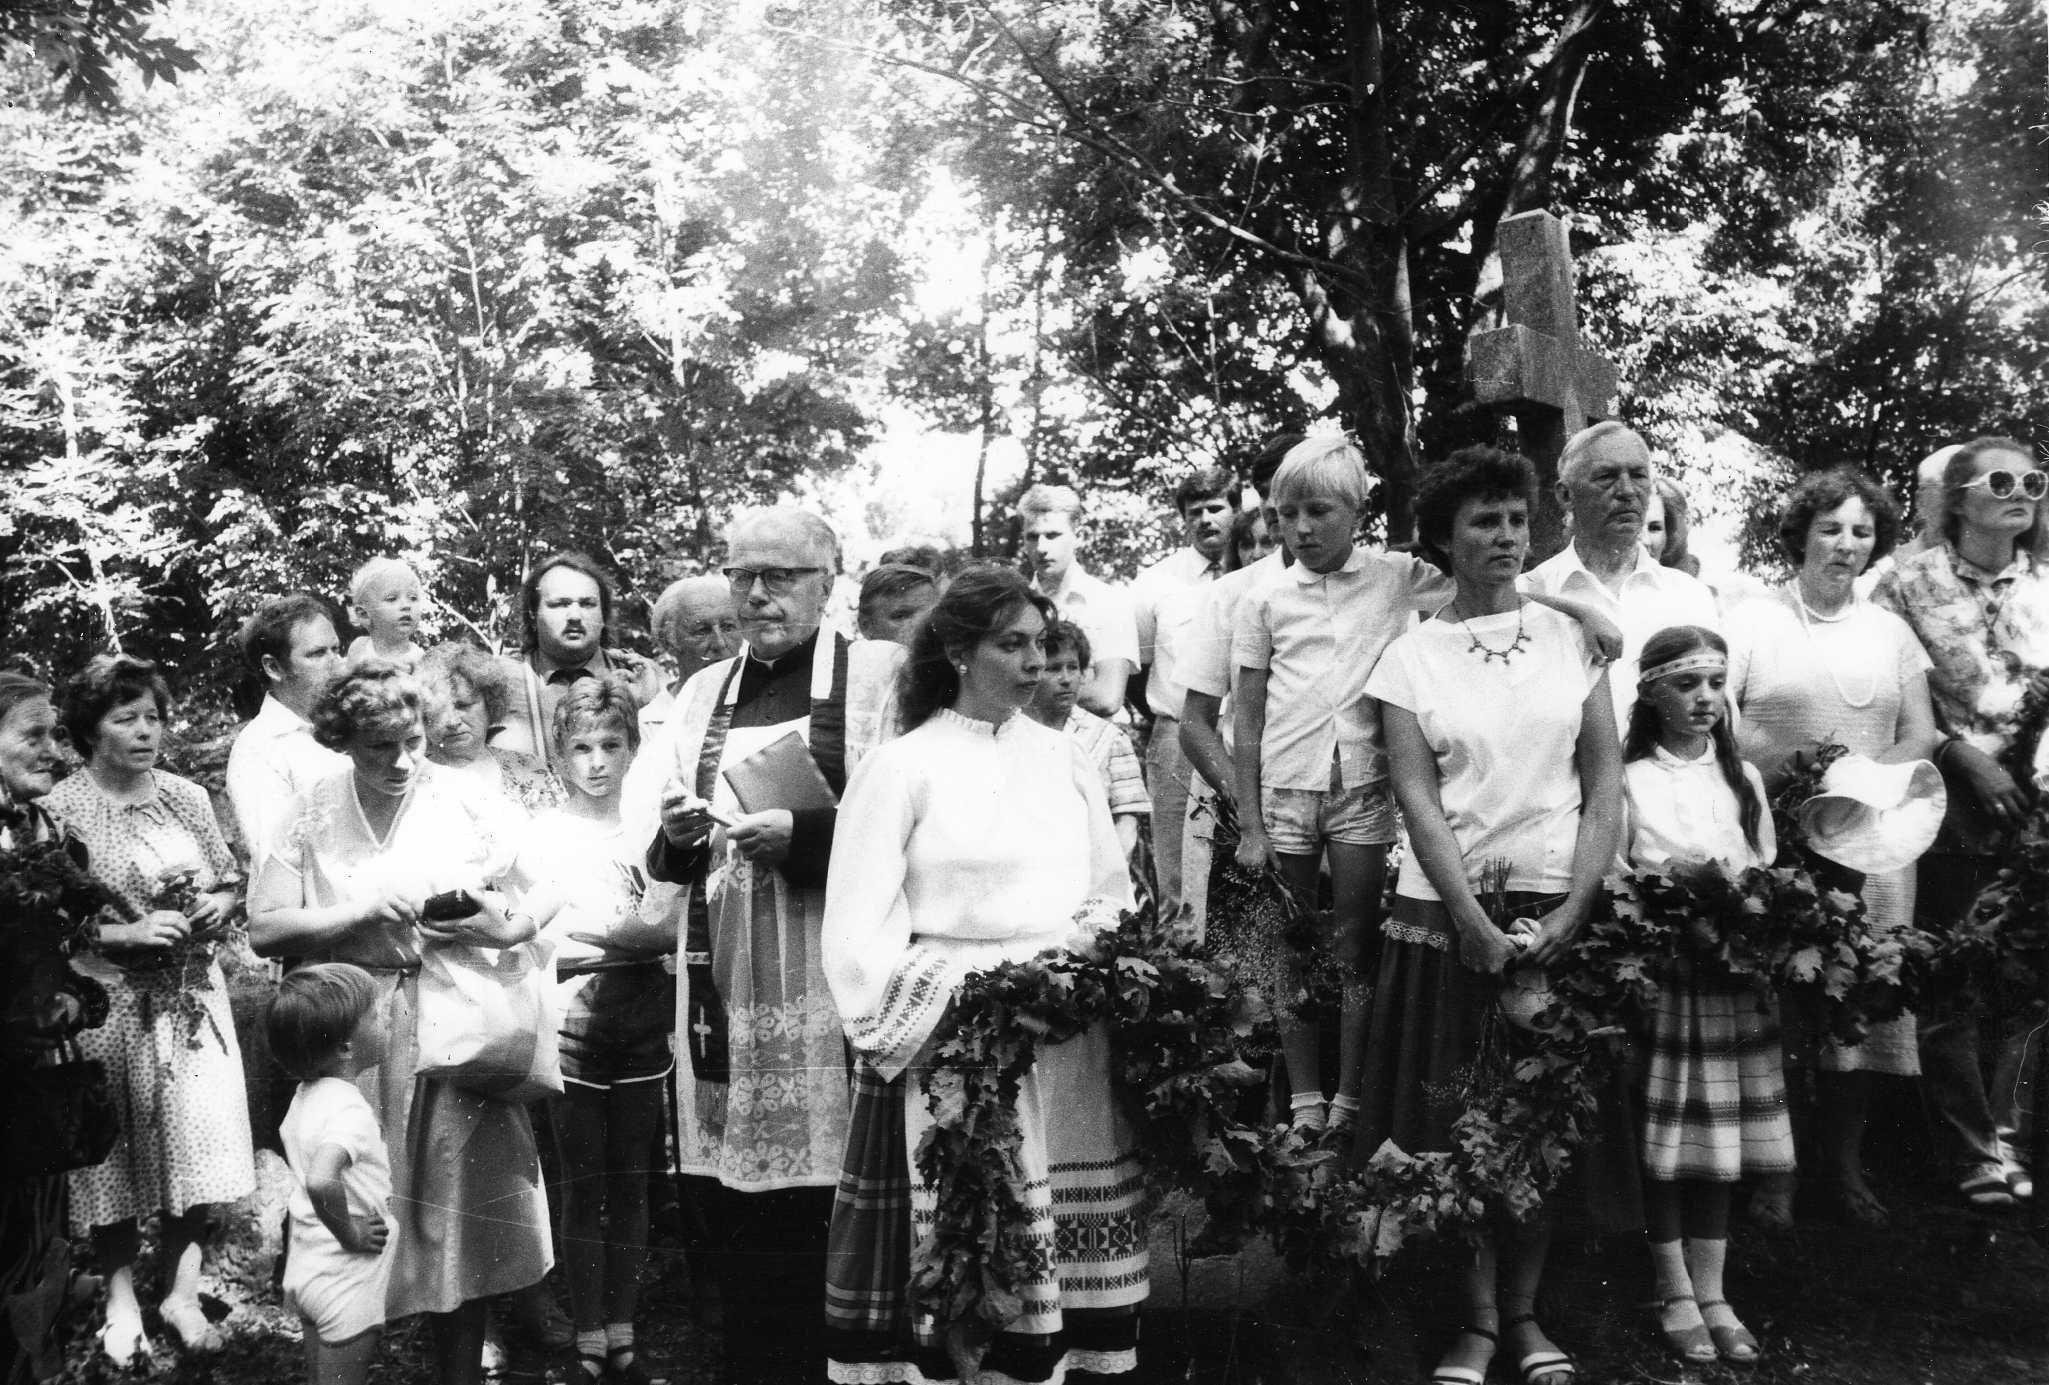 Vasinauskų giminės susitikimas. 1989 m.